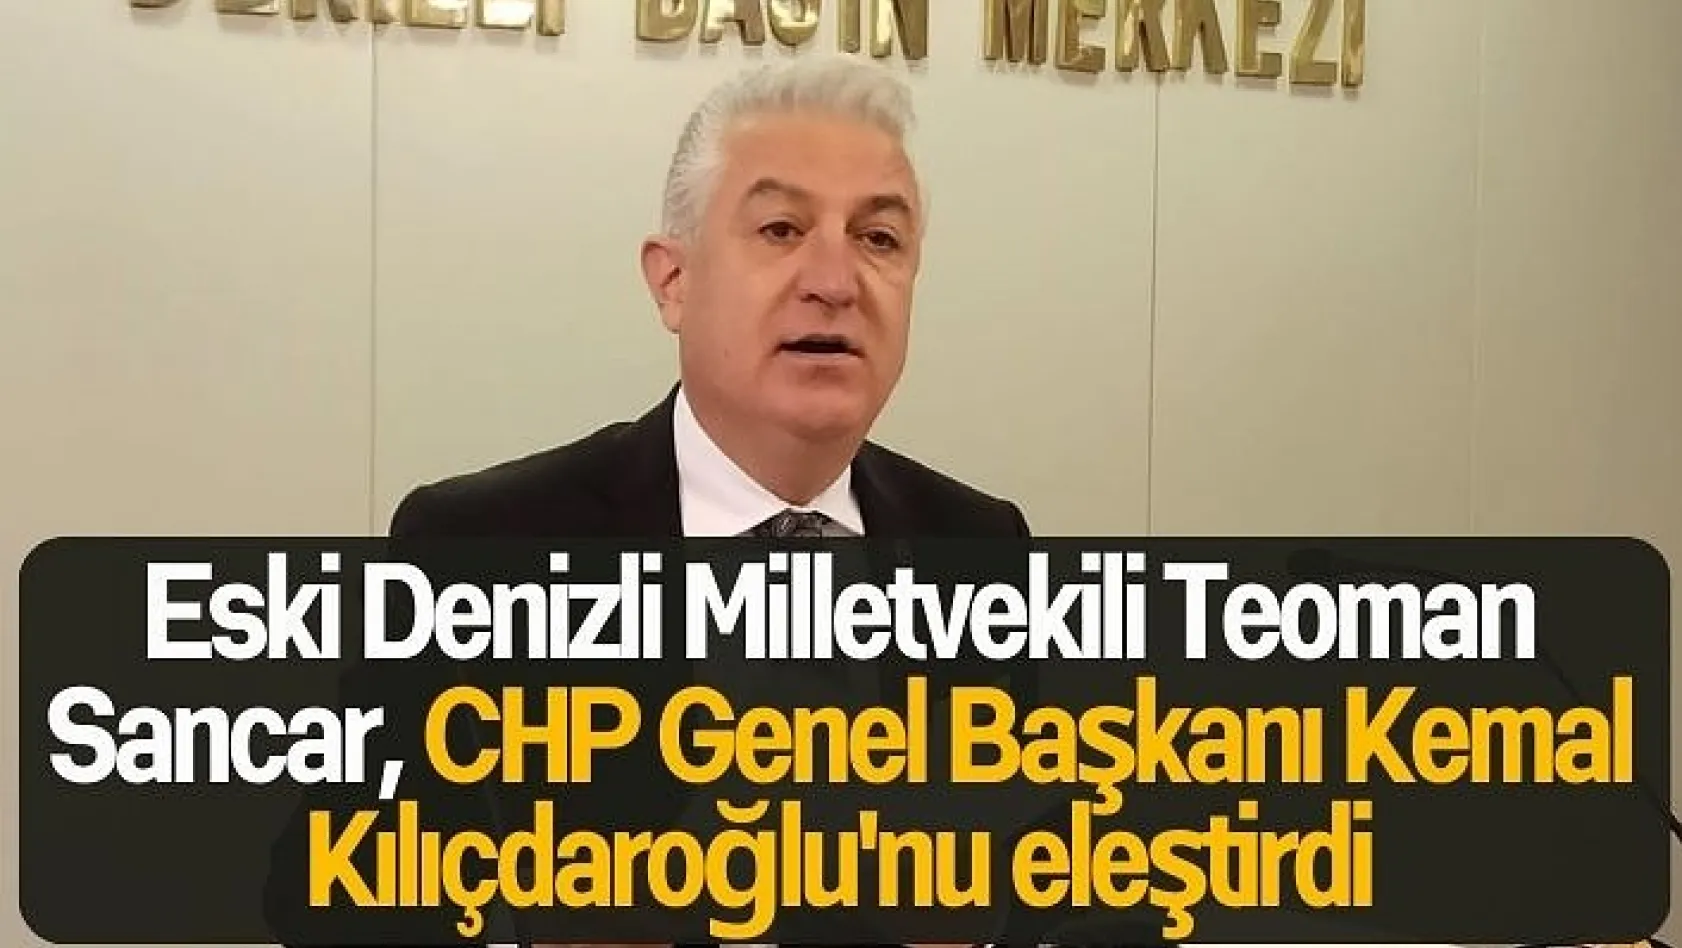 Eski Denizli Milletvekili Teoman Sancar, CHP Genel Başkanı Kemal Kılıçdaroğlu'nu eleştirdi